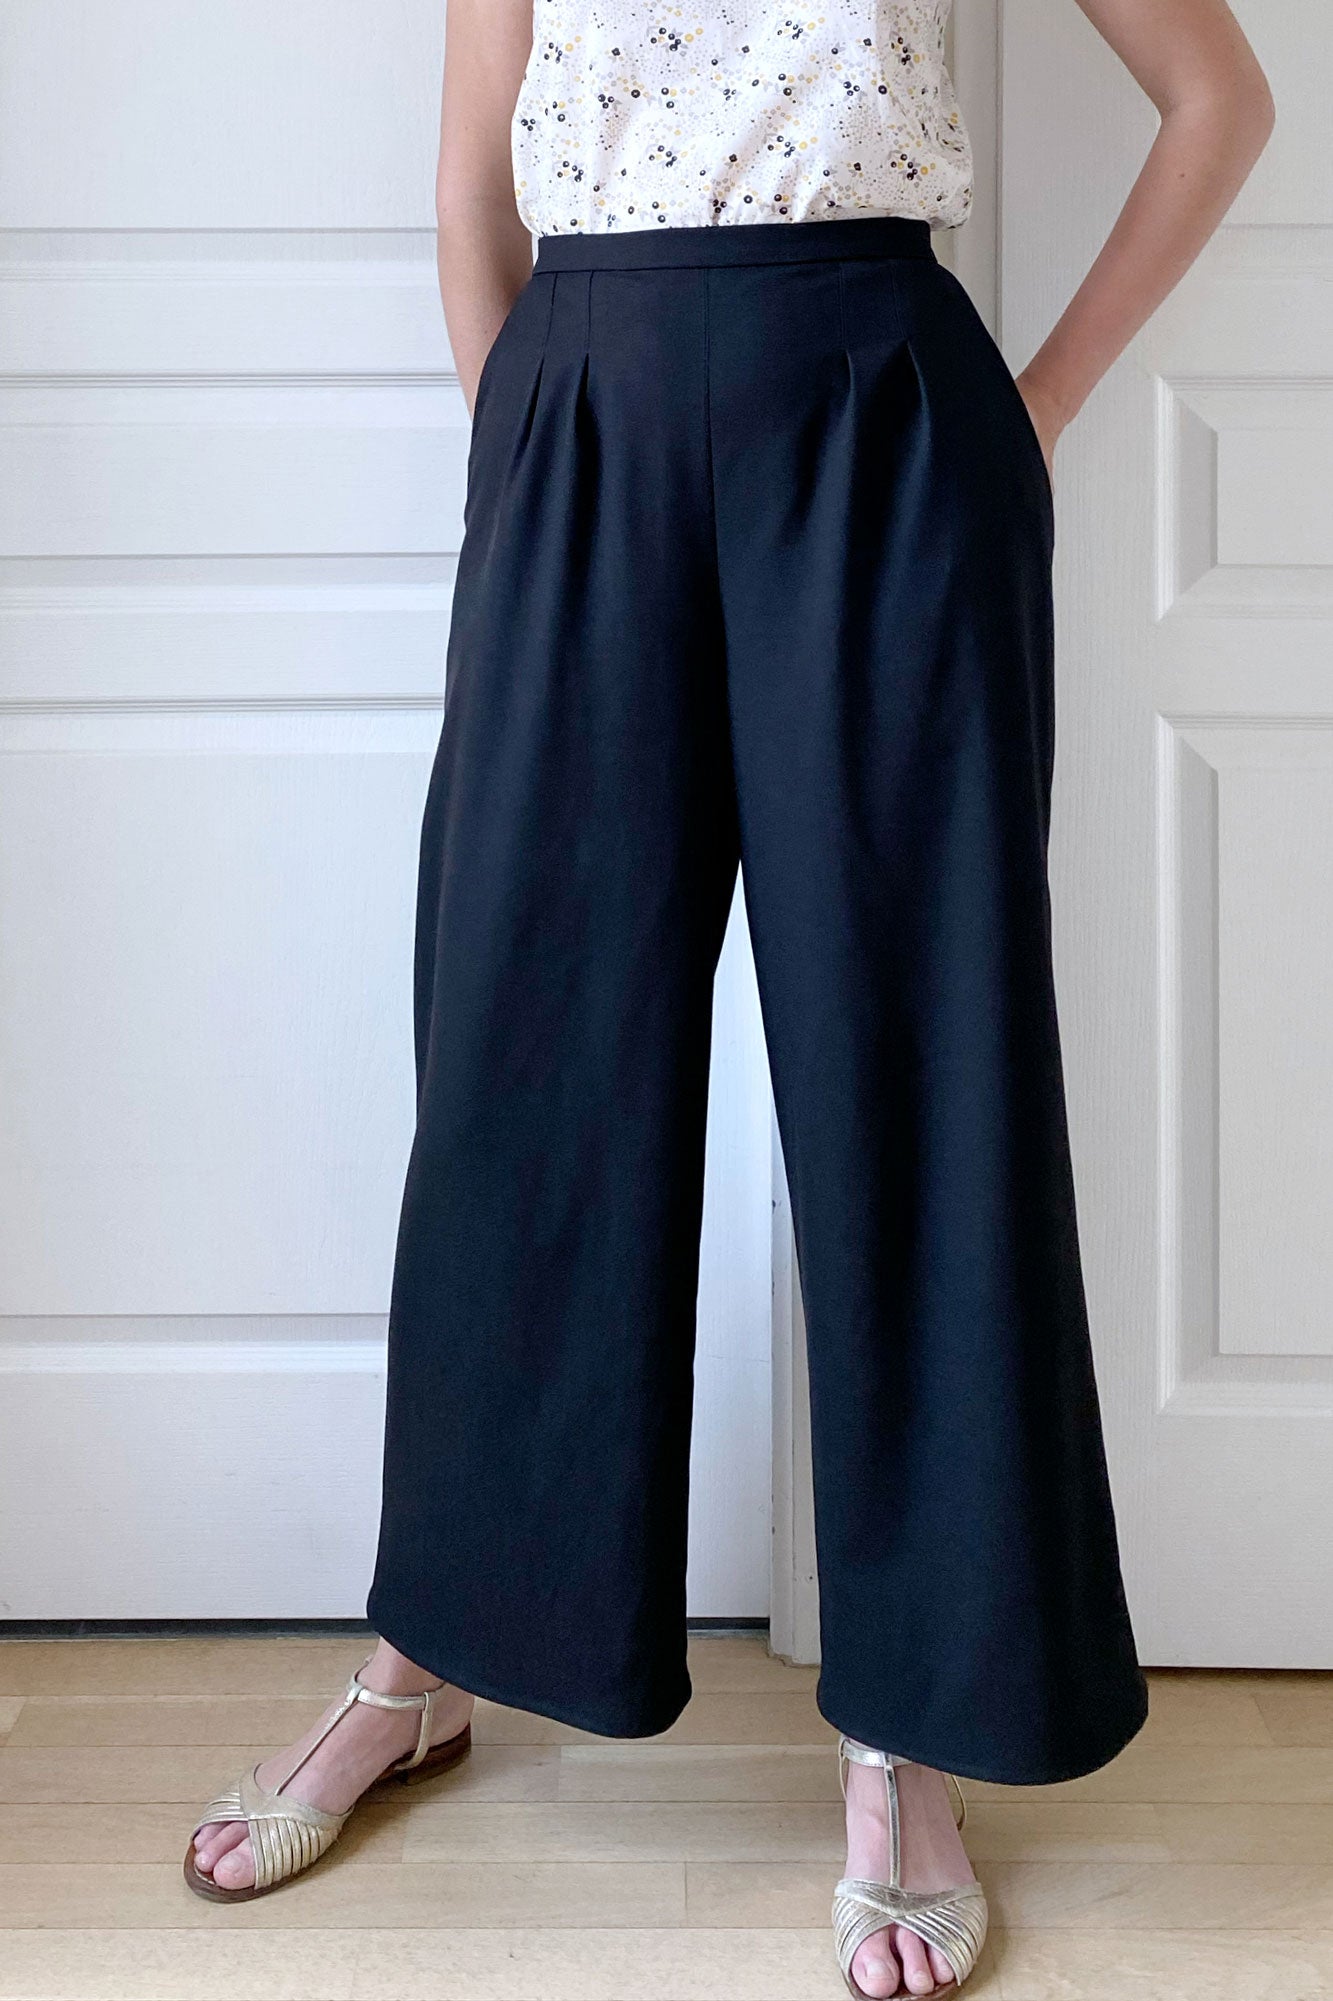 coudre pantalon large patron de couture pdf jupe culotte longue évasée fluide noire patron pdf sur mesure atelier charlotte auzou crêpe bambou cousette